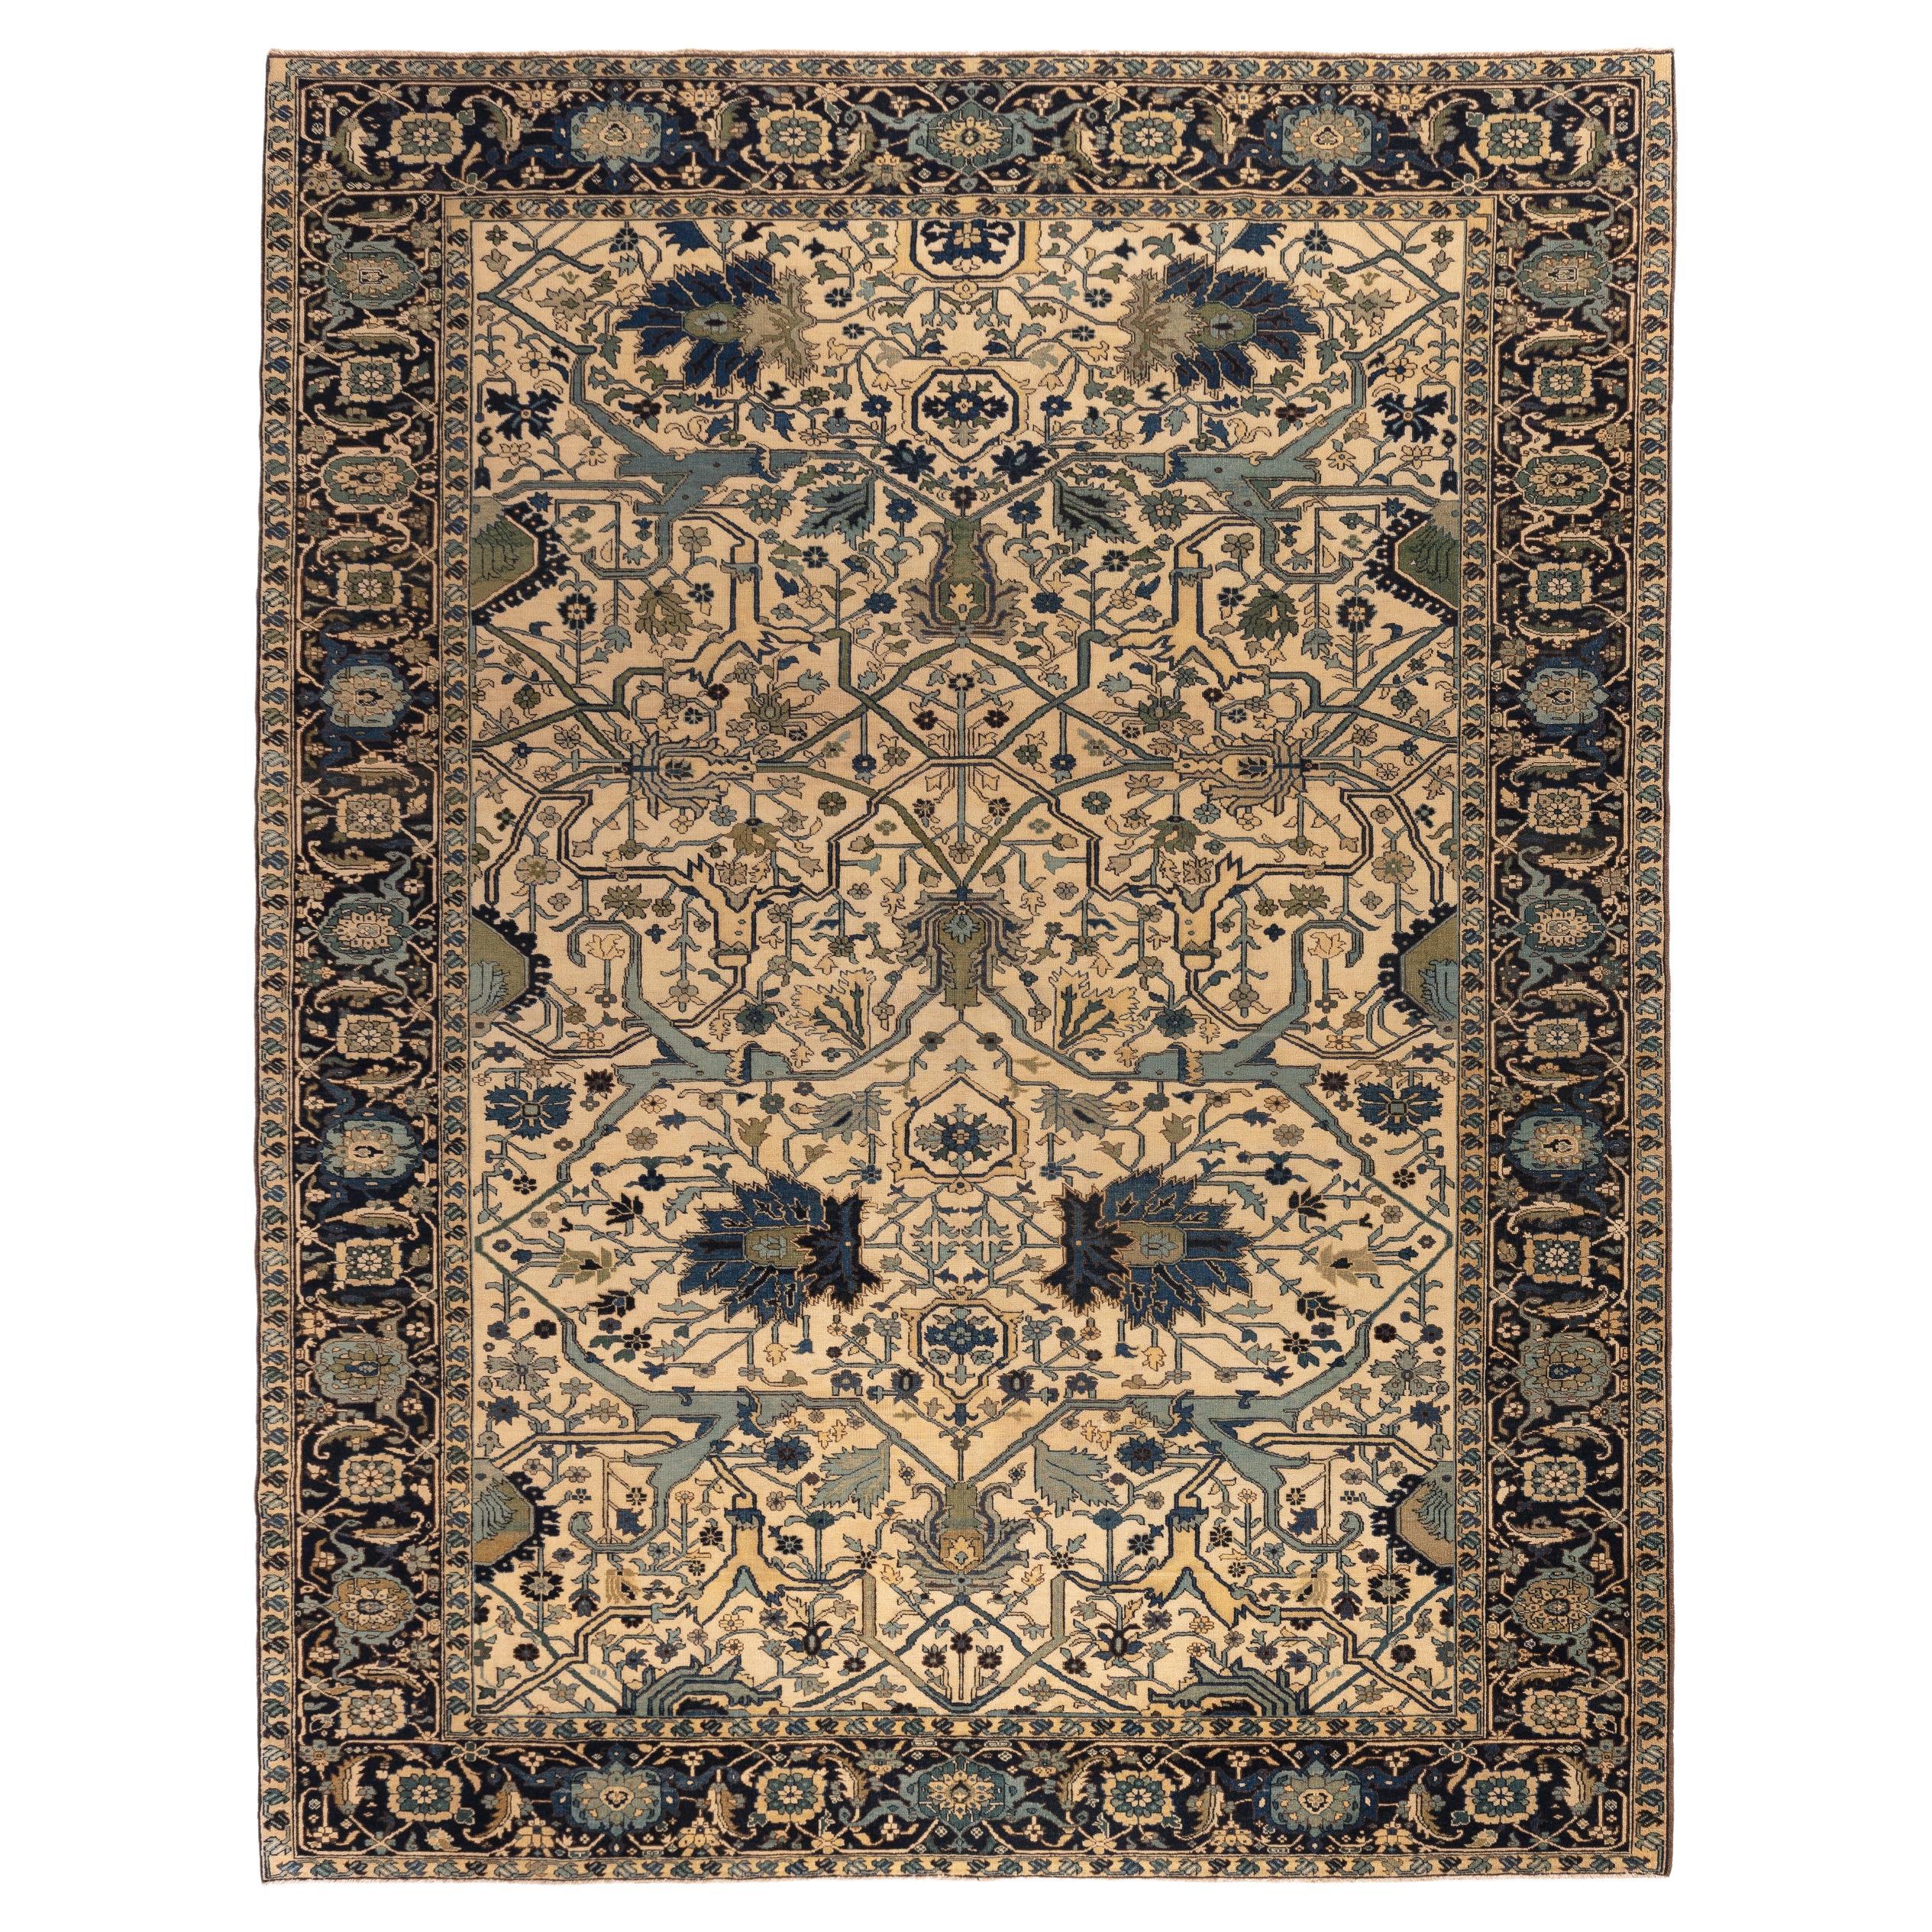 Ararat-Teppiche Gerous Arabesque - Teppich im Revival-Stil des 19. Jahrhunderts - Naturfarben